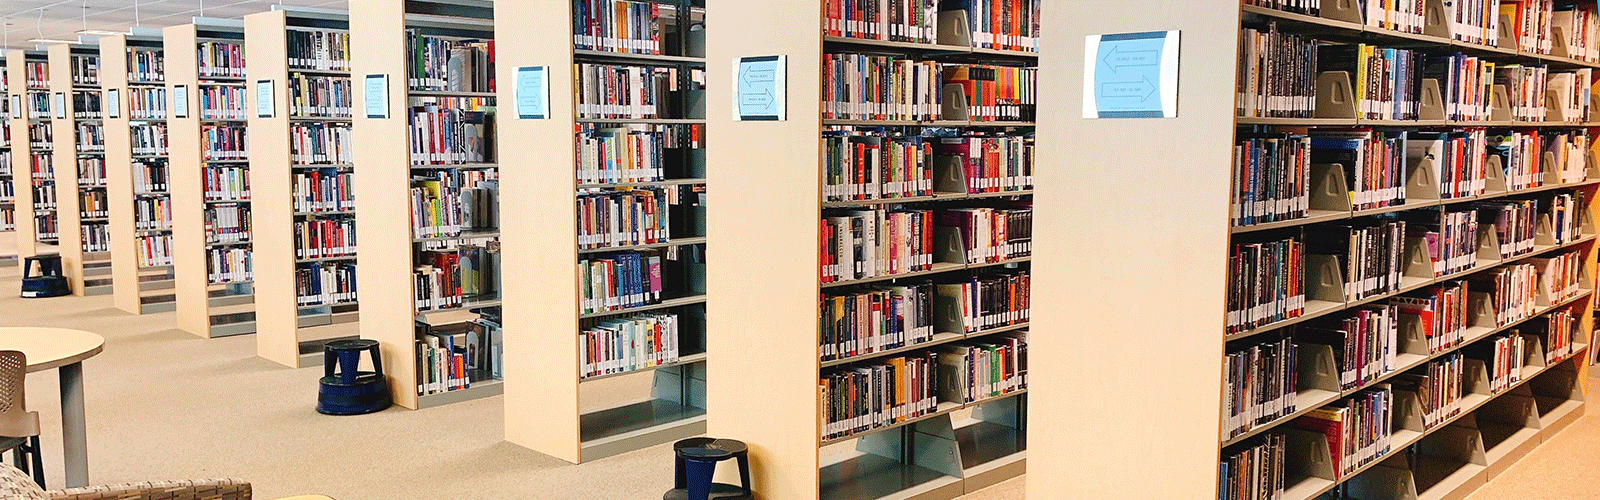 CCC library bookshelves